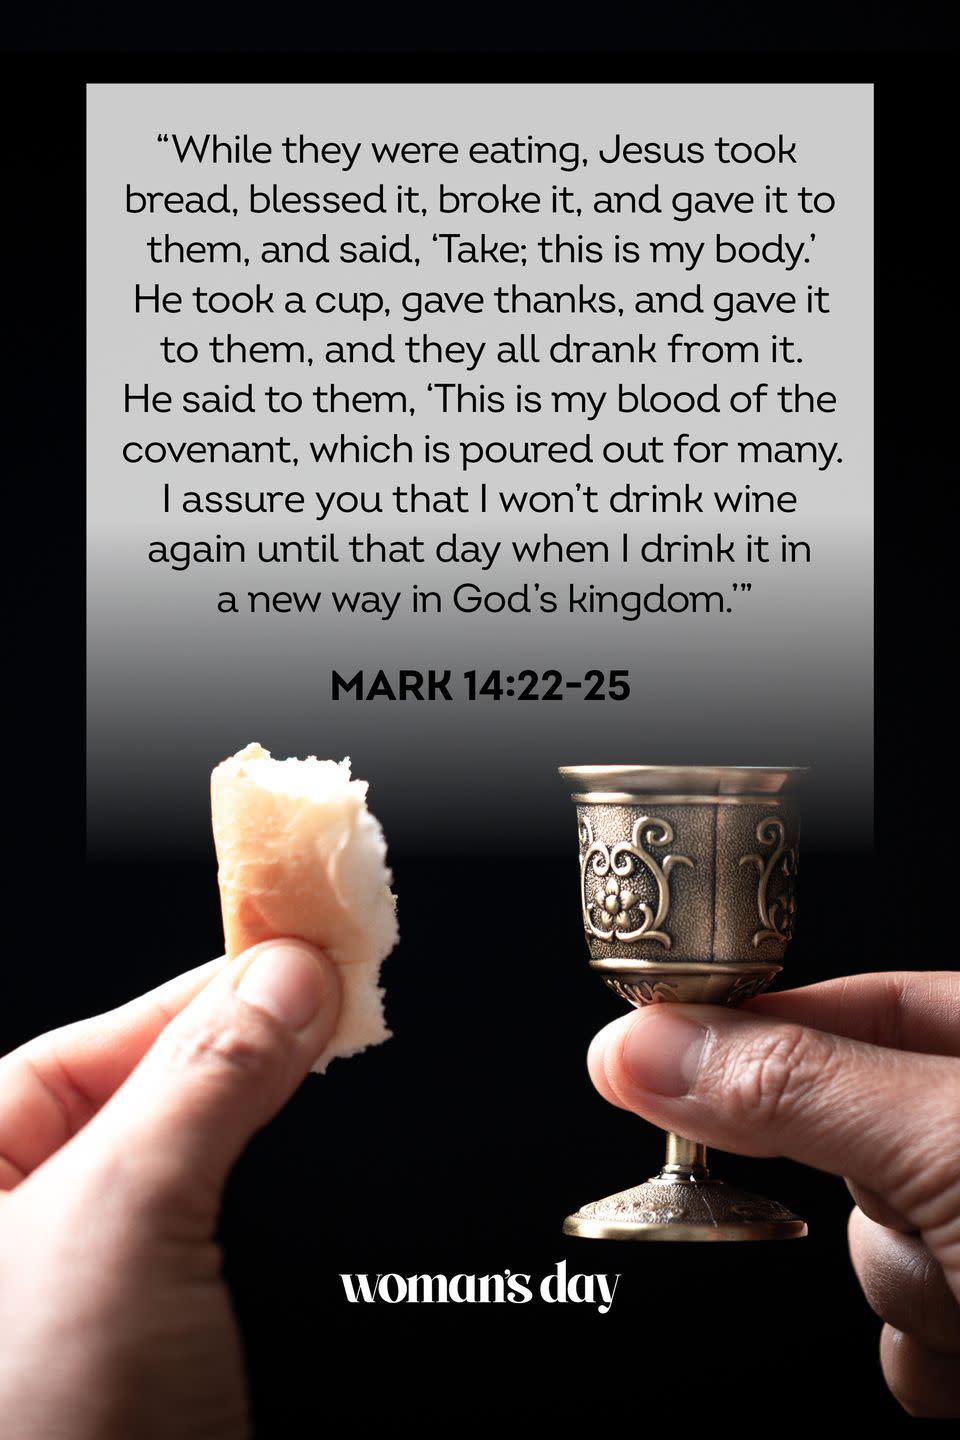 2) Mark 14:22-25